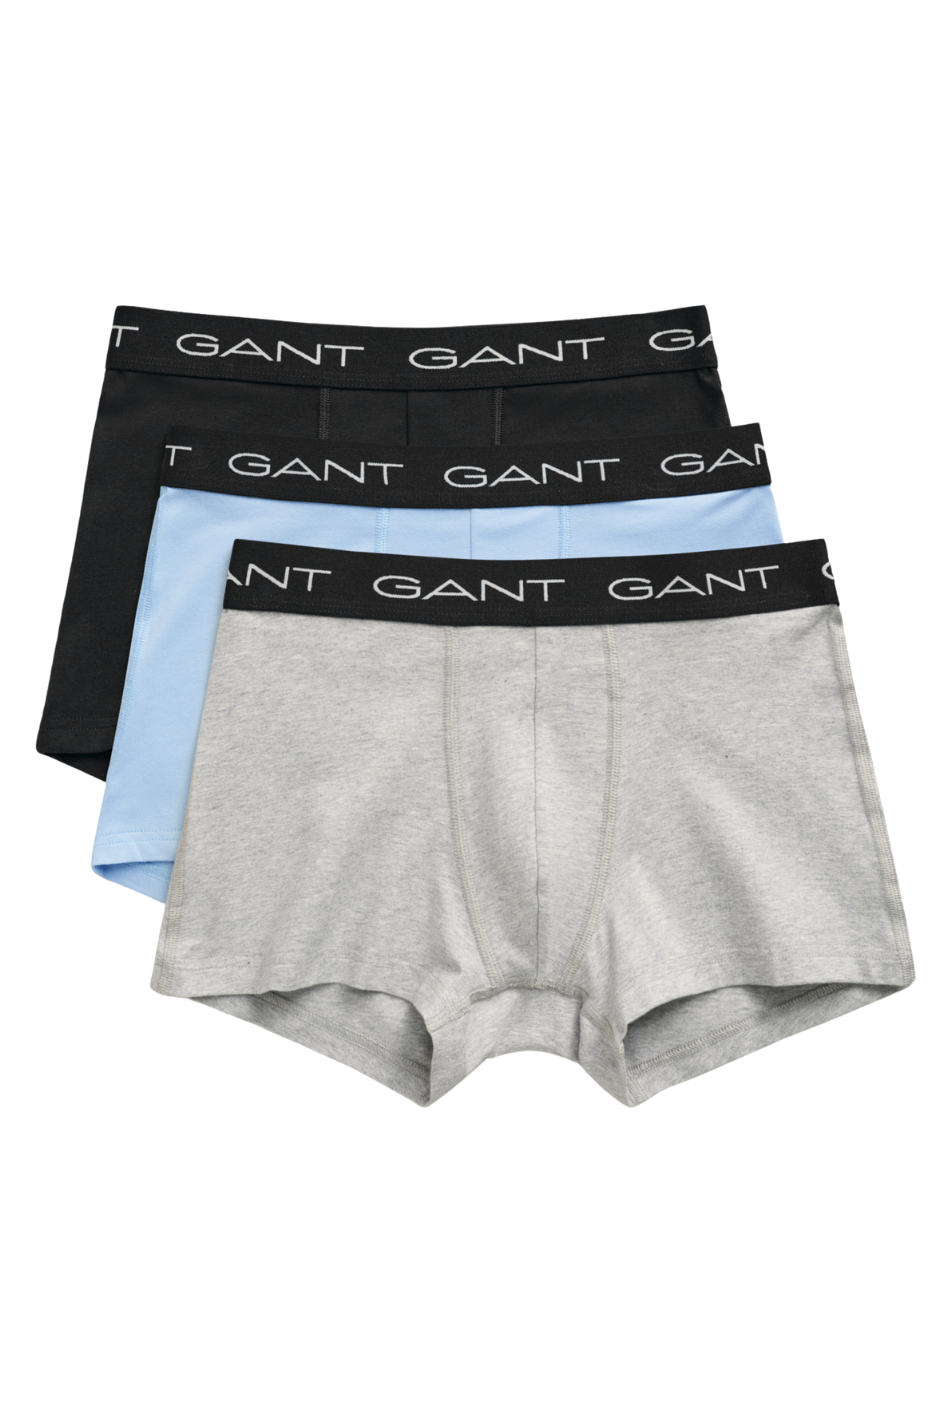 Gant 3 Pack Men's Trunk